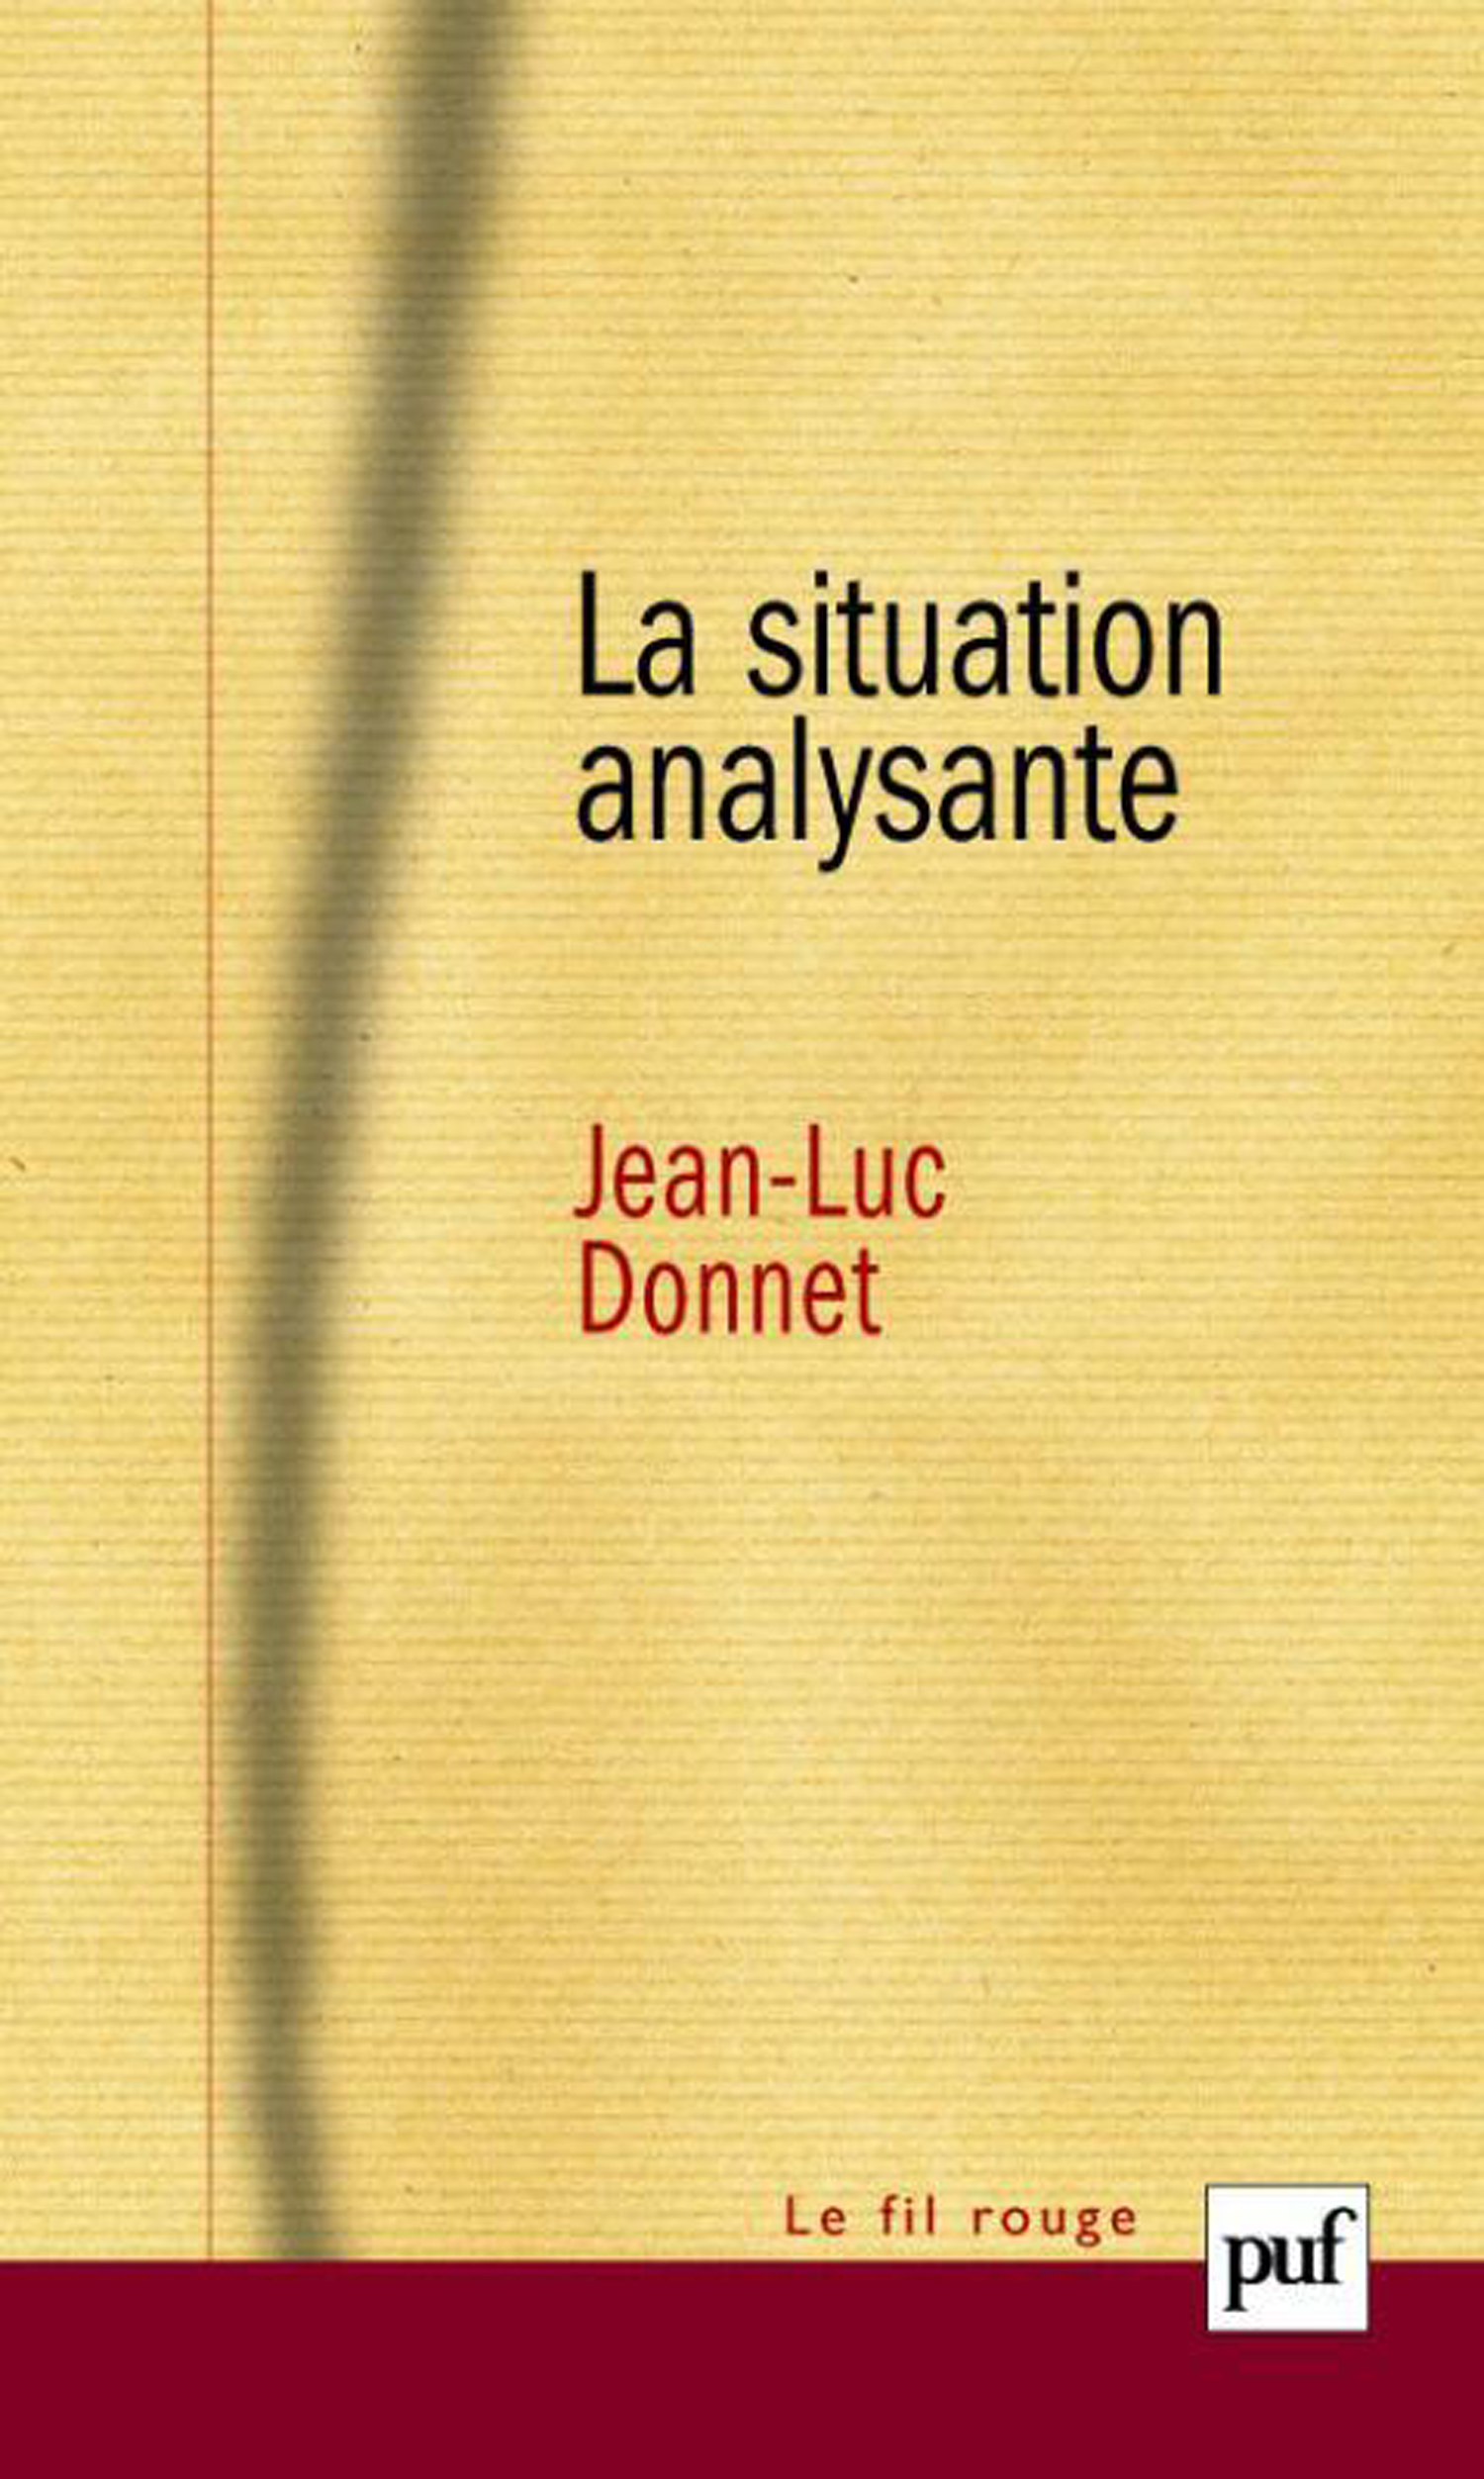 La situation analysante De Jean-Luc Donnet - Presses Universitaires de France